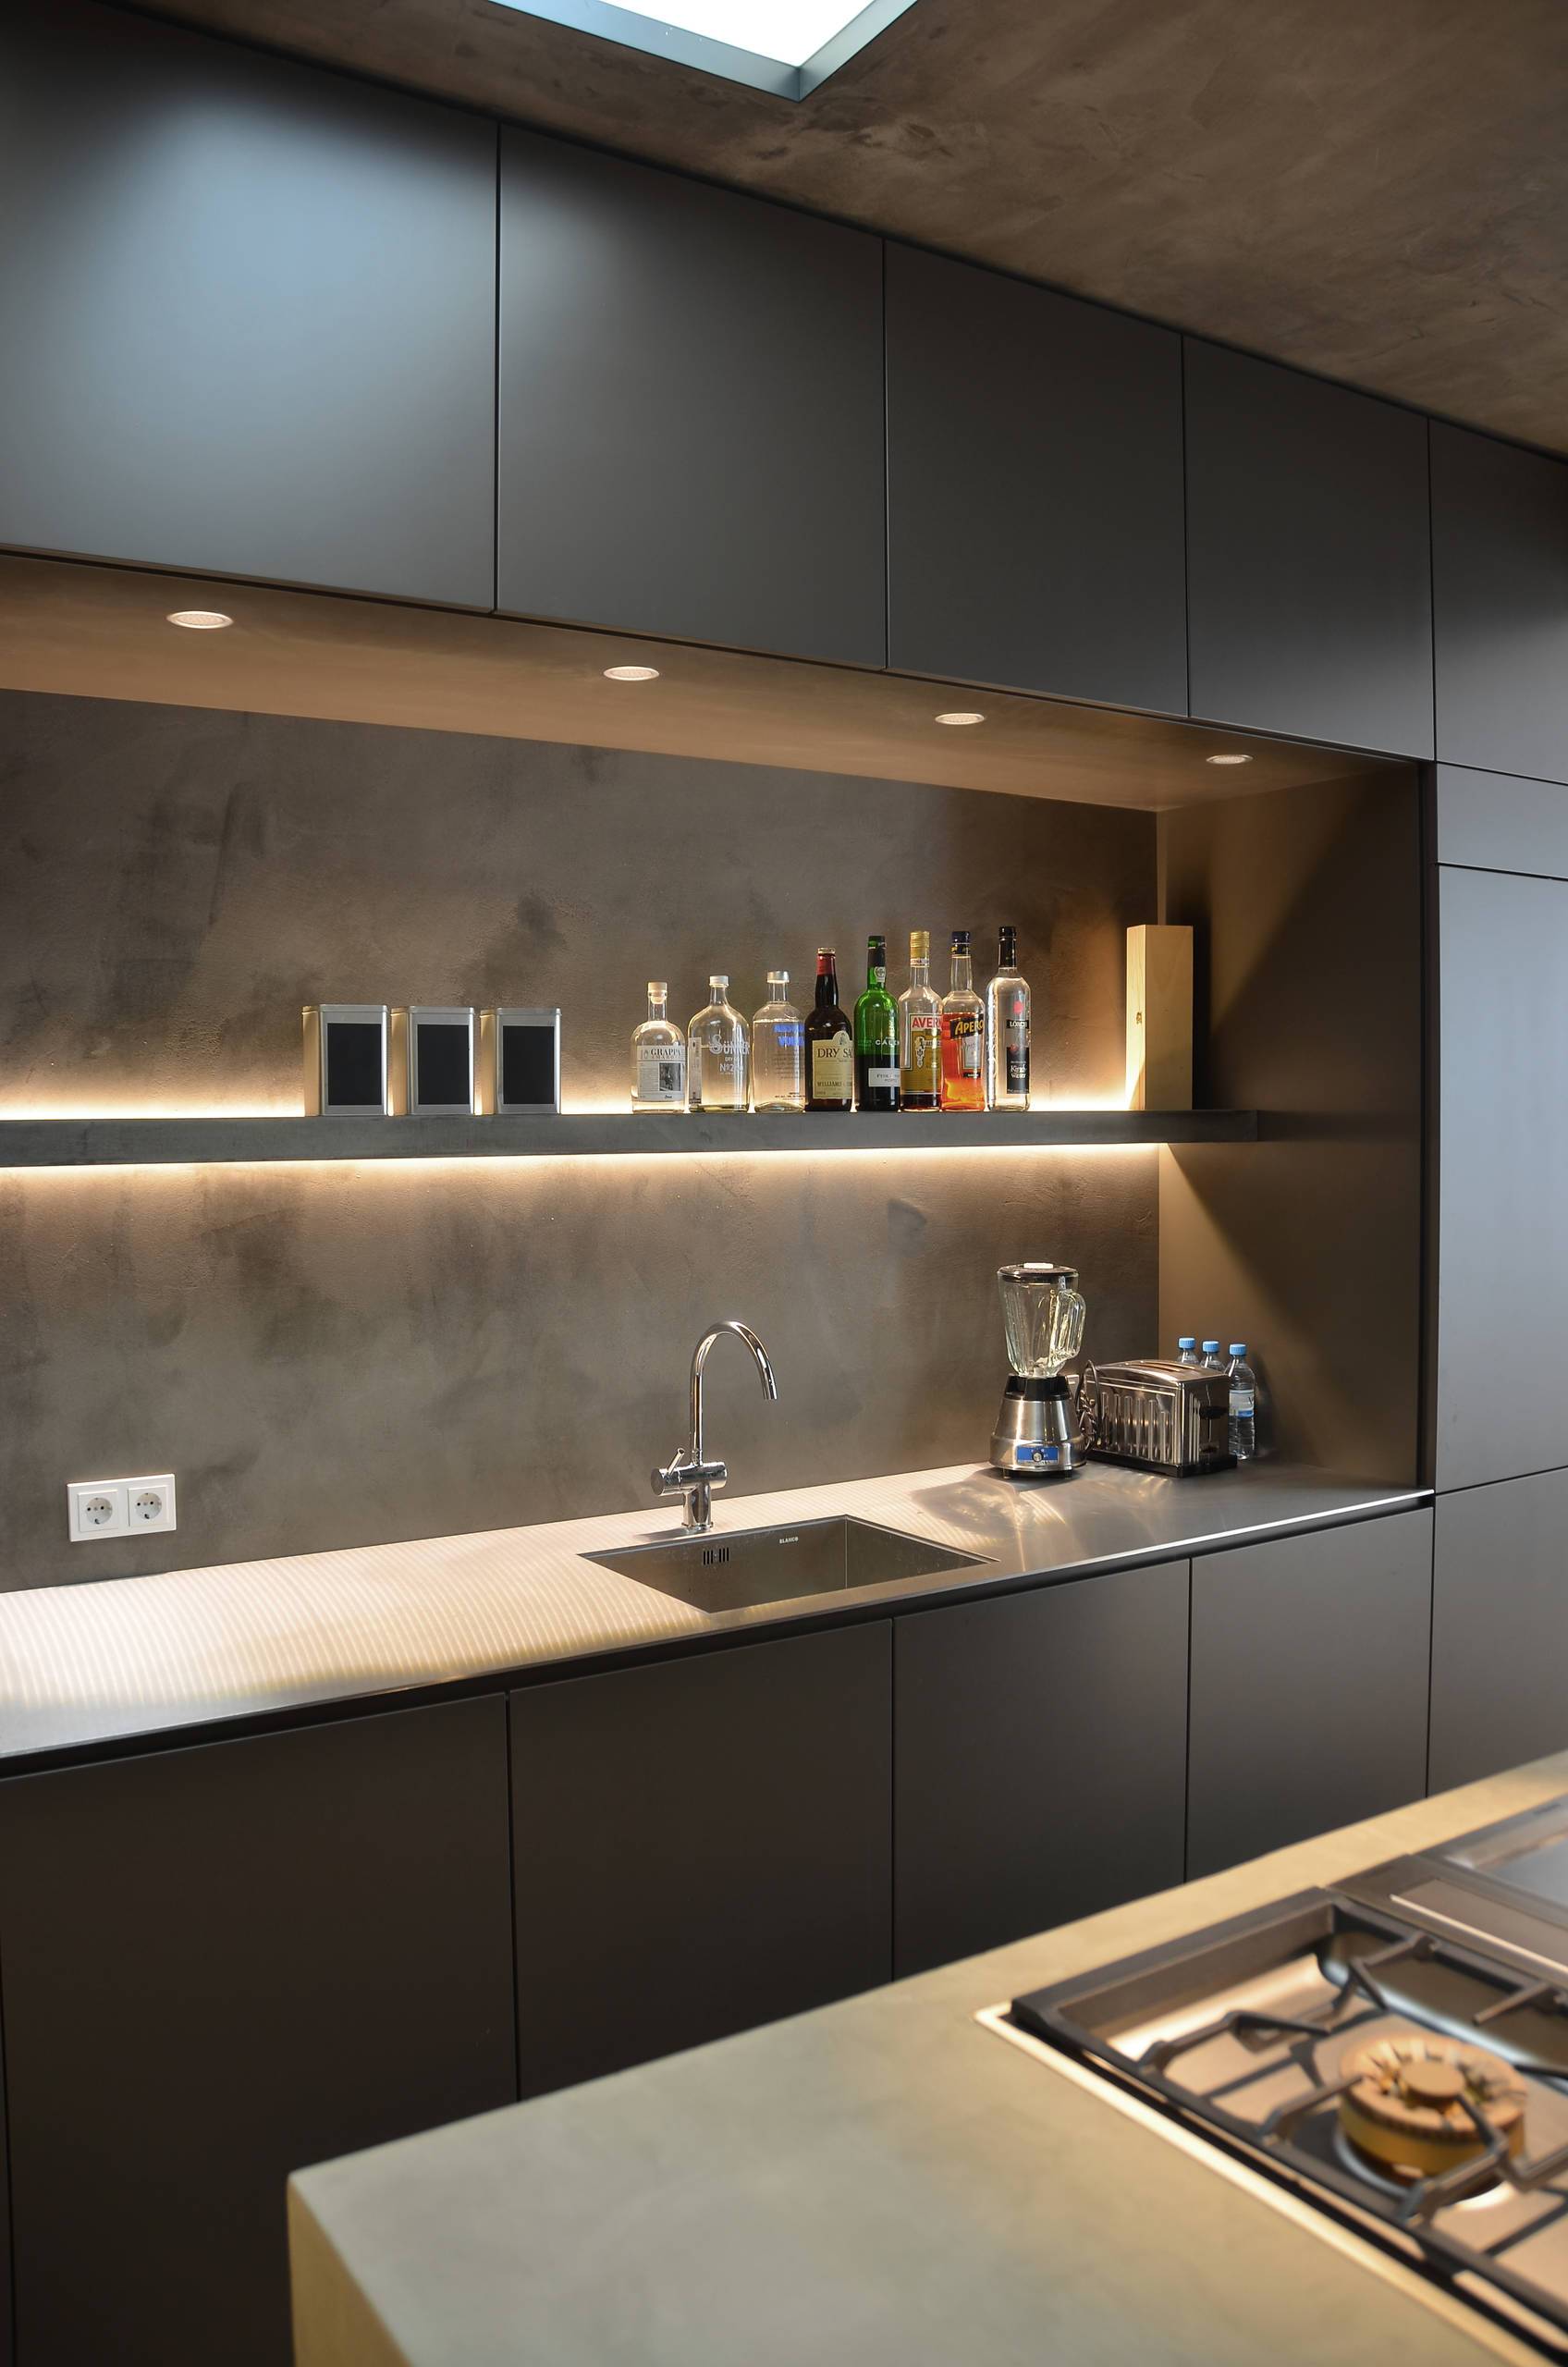 Светодиодная подсветка на кухню под шкафы с датчиками движения: как установить кухонные светильники и светодиодные ленты